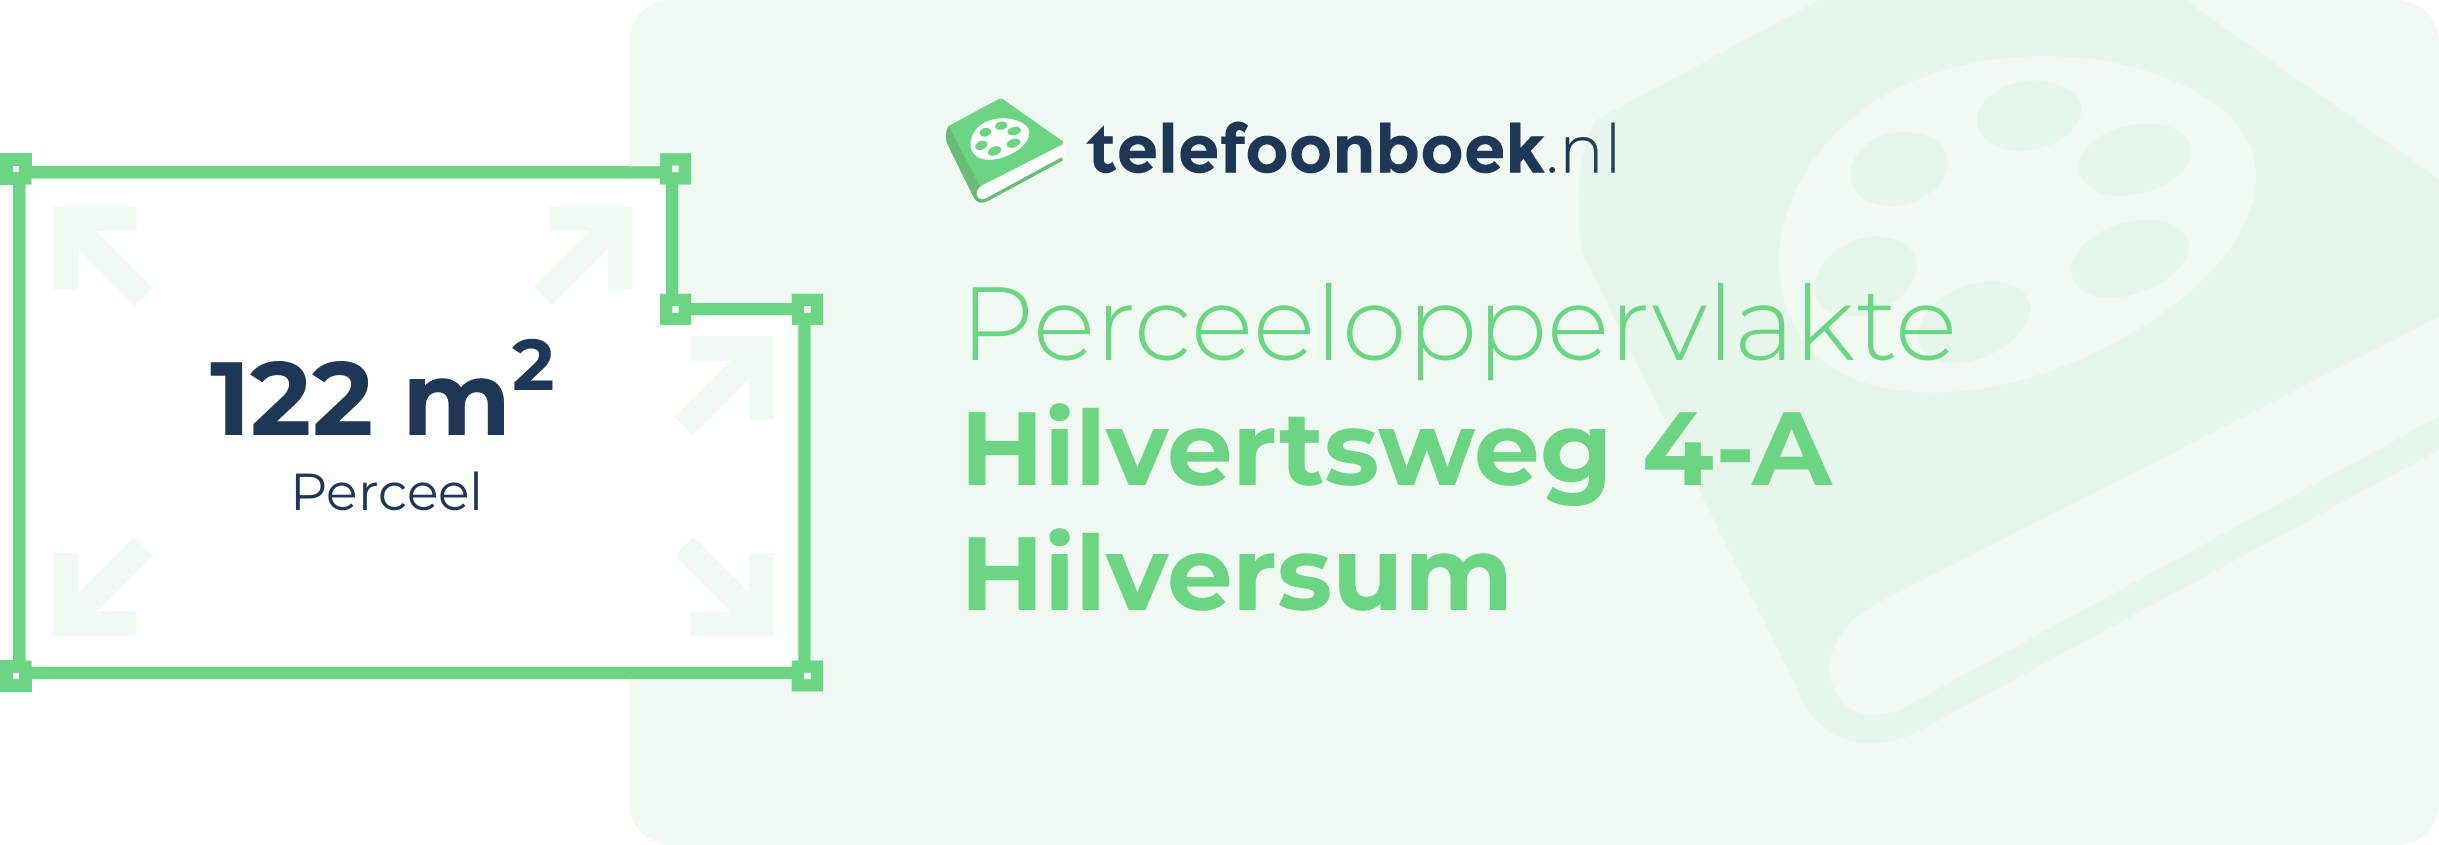 Perceeloppervlakte Hilvertsweg 4-A Hilversum